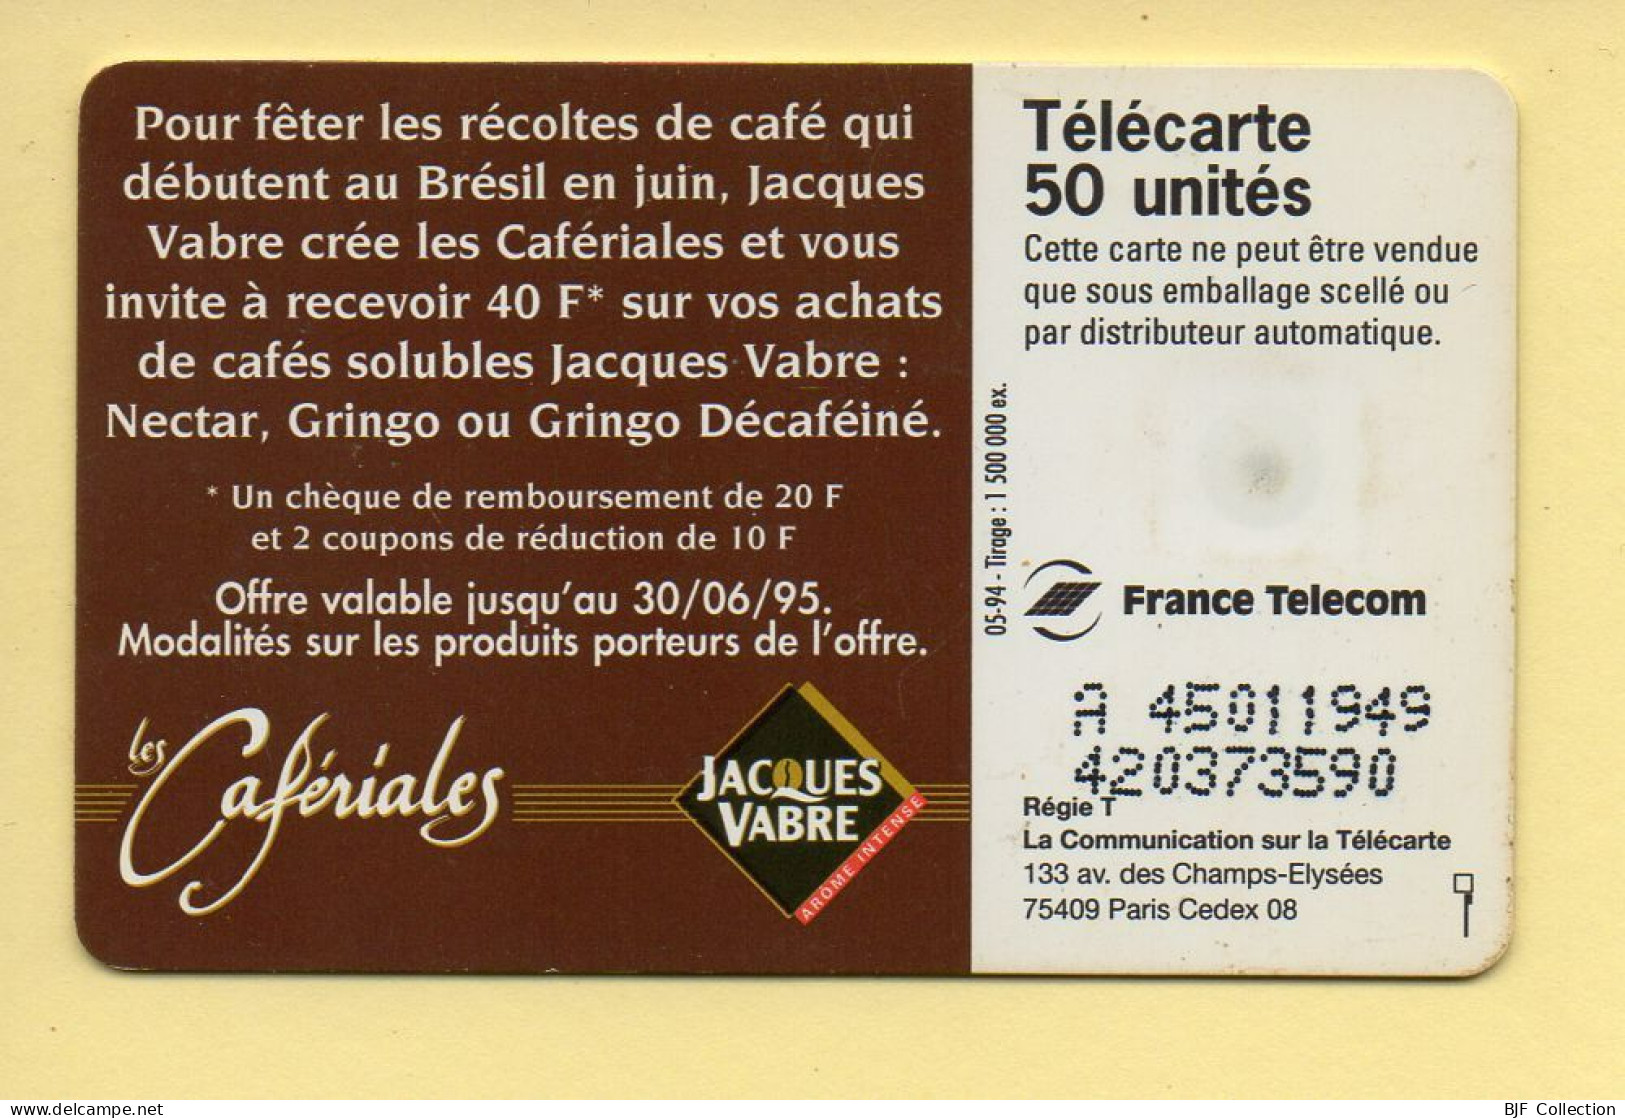 Télécarte 1994 : LES CAFERIALES / 50 Unités / Numéro A 45011949/420373590 / 05-94 (voir Puce Et Numéro Au Dos) - 1994